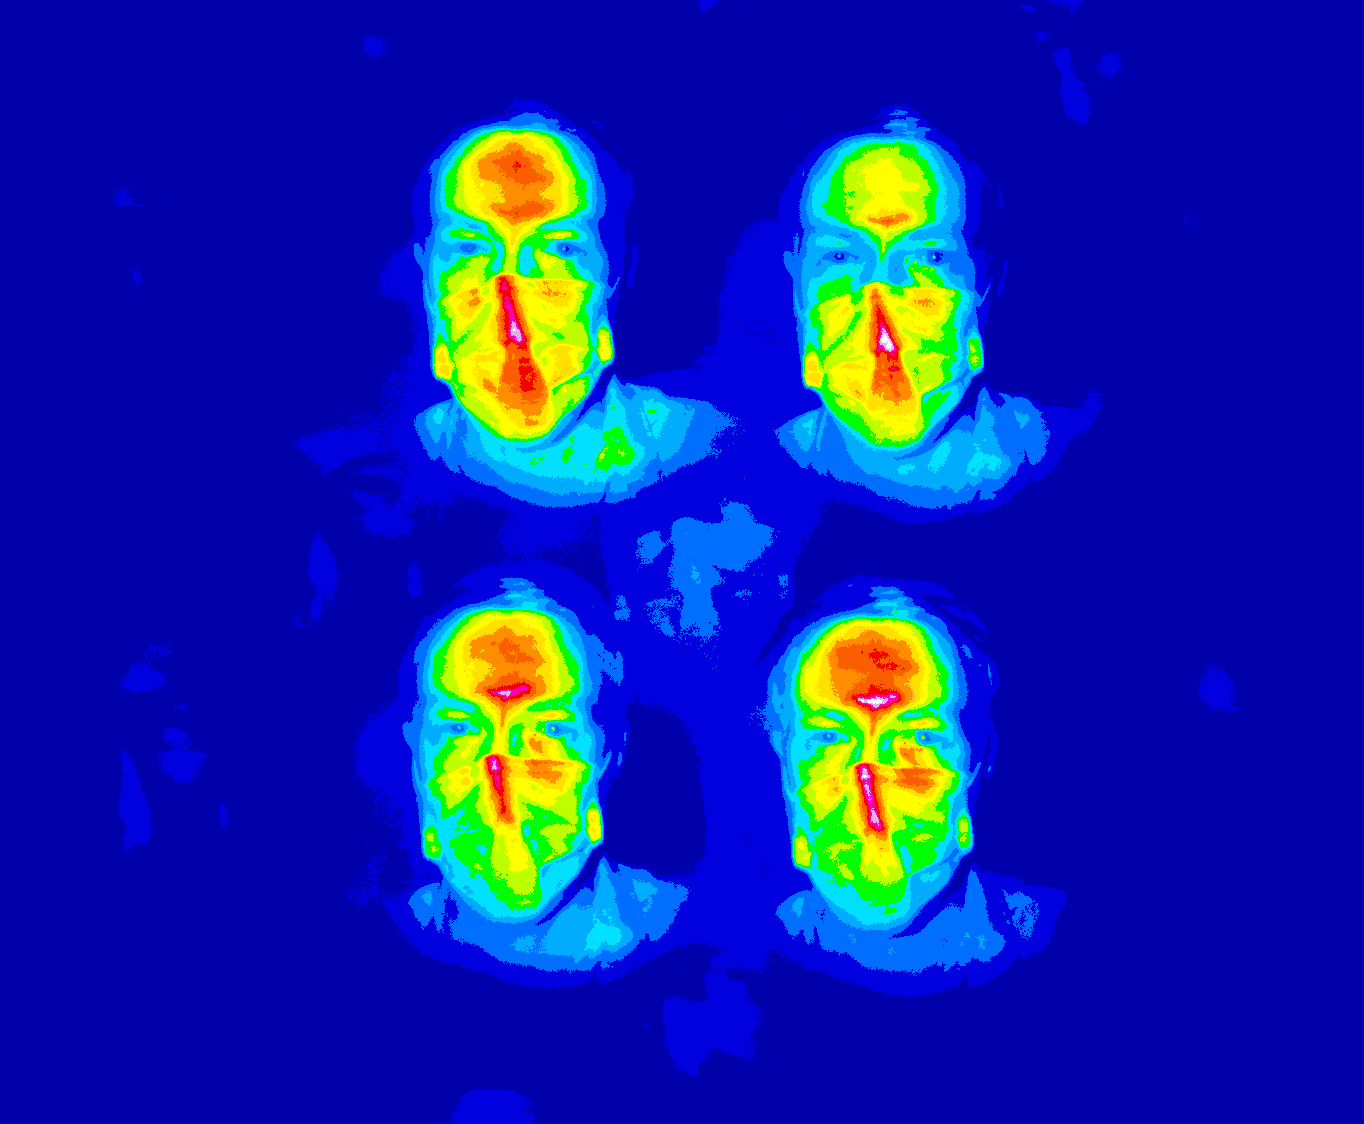 Cahaya terpolarisasi dibagi menjadi 4 aliran, menampilkan detail wajah yang berbeda.